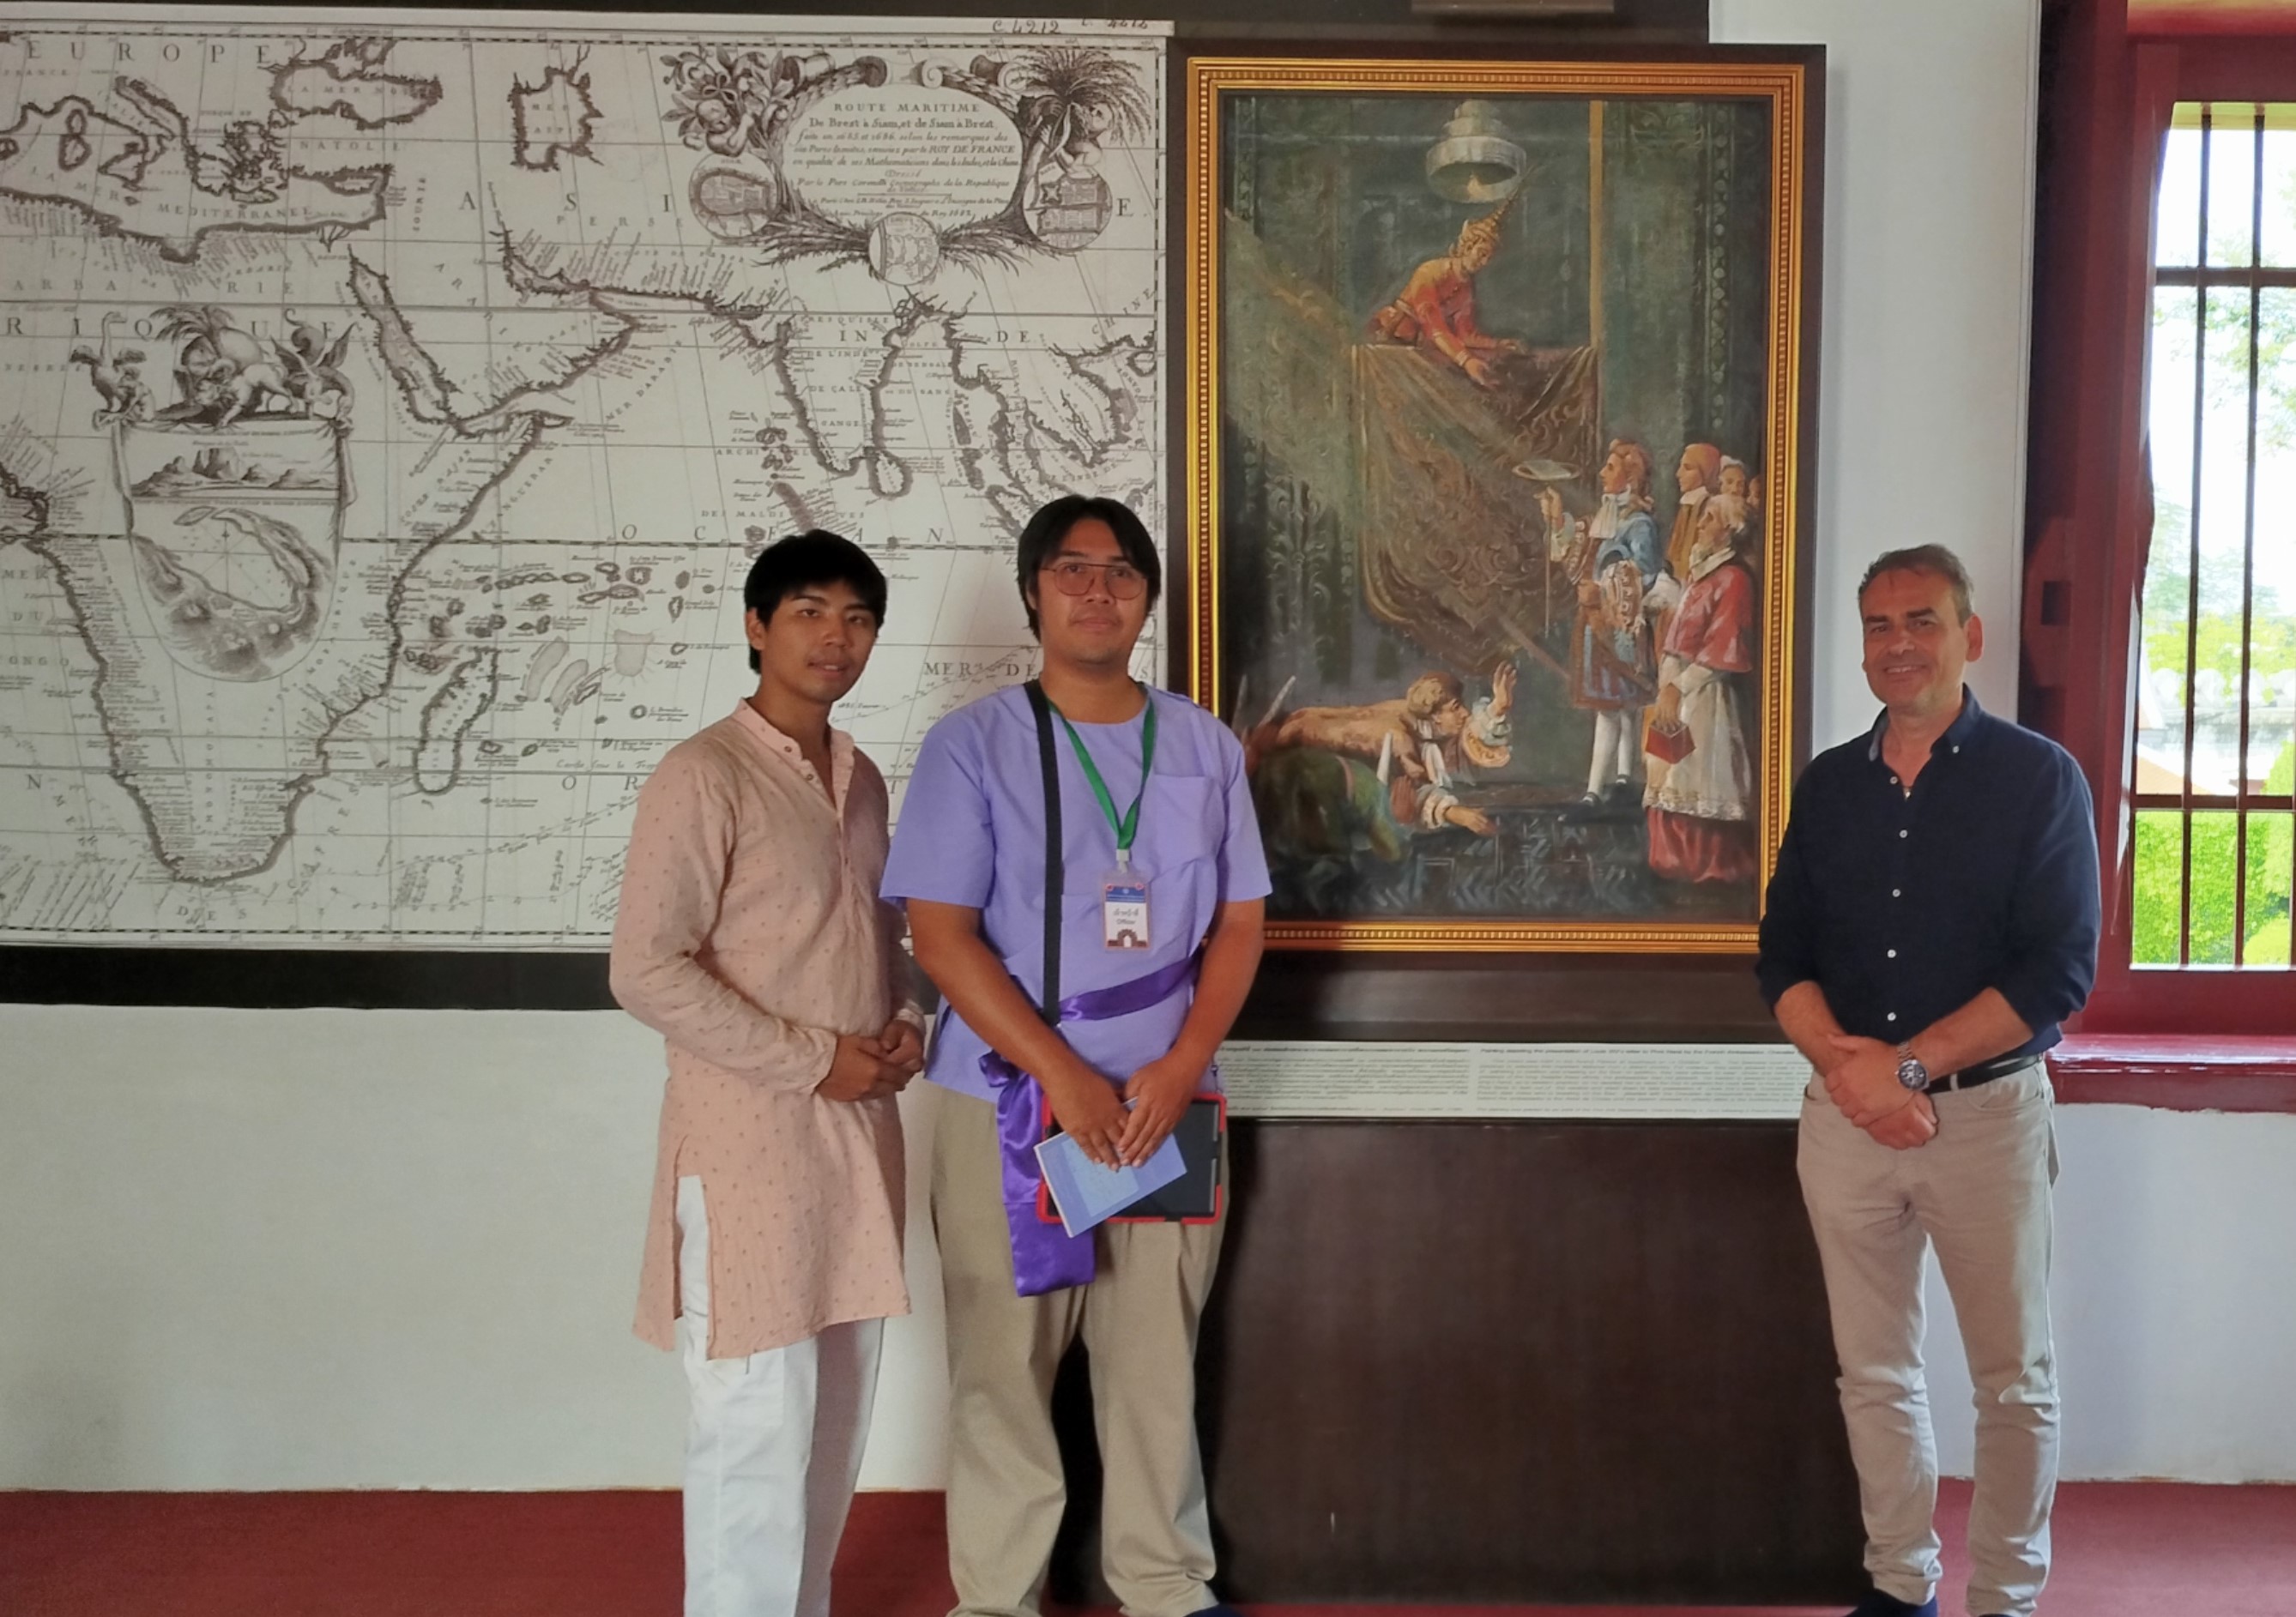 Στο μουσείο του Lopburi στον πίνακα απεικονίζεται ο Κωνσταντίνος Γεράκης μαζί με τον βασιλιά Ναράι